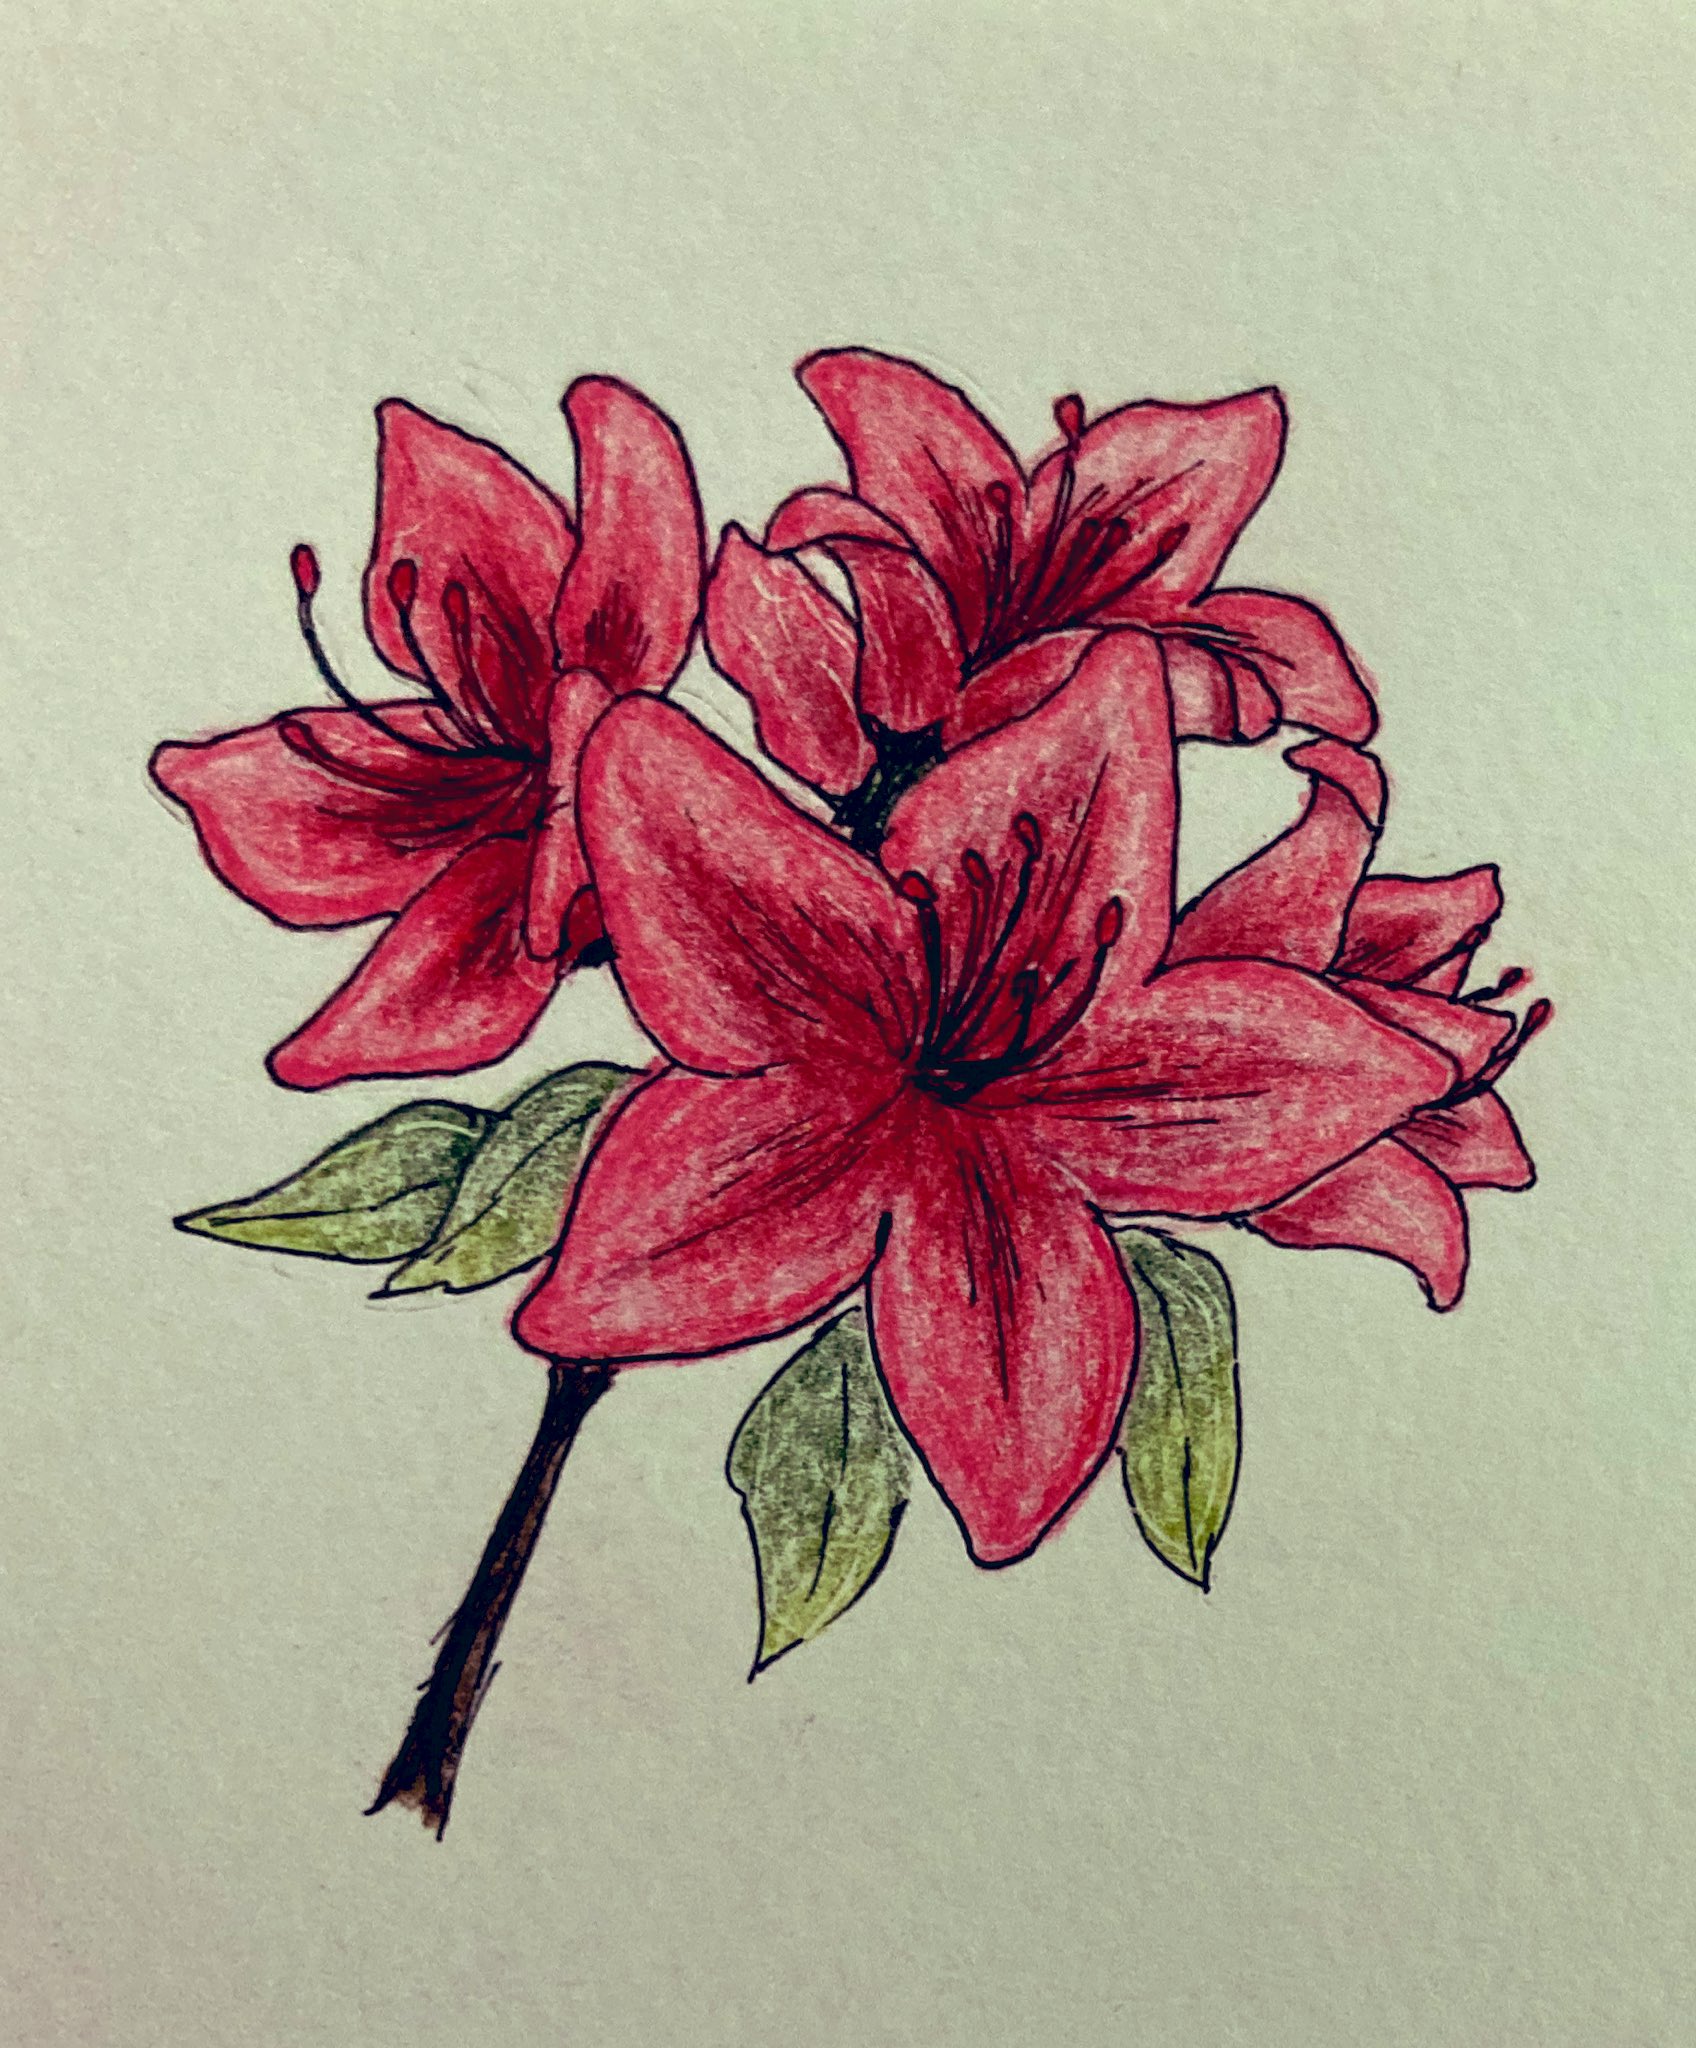 Twitter 上的 ナナ 5月の花 サツキ さつき イラスト 色鉛筆 花のイラスト T Co Uwkfu5qz5d Twitter